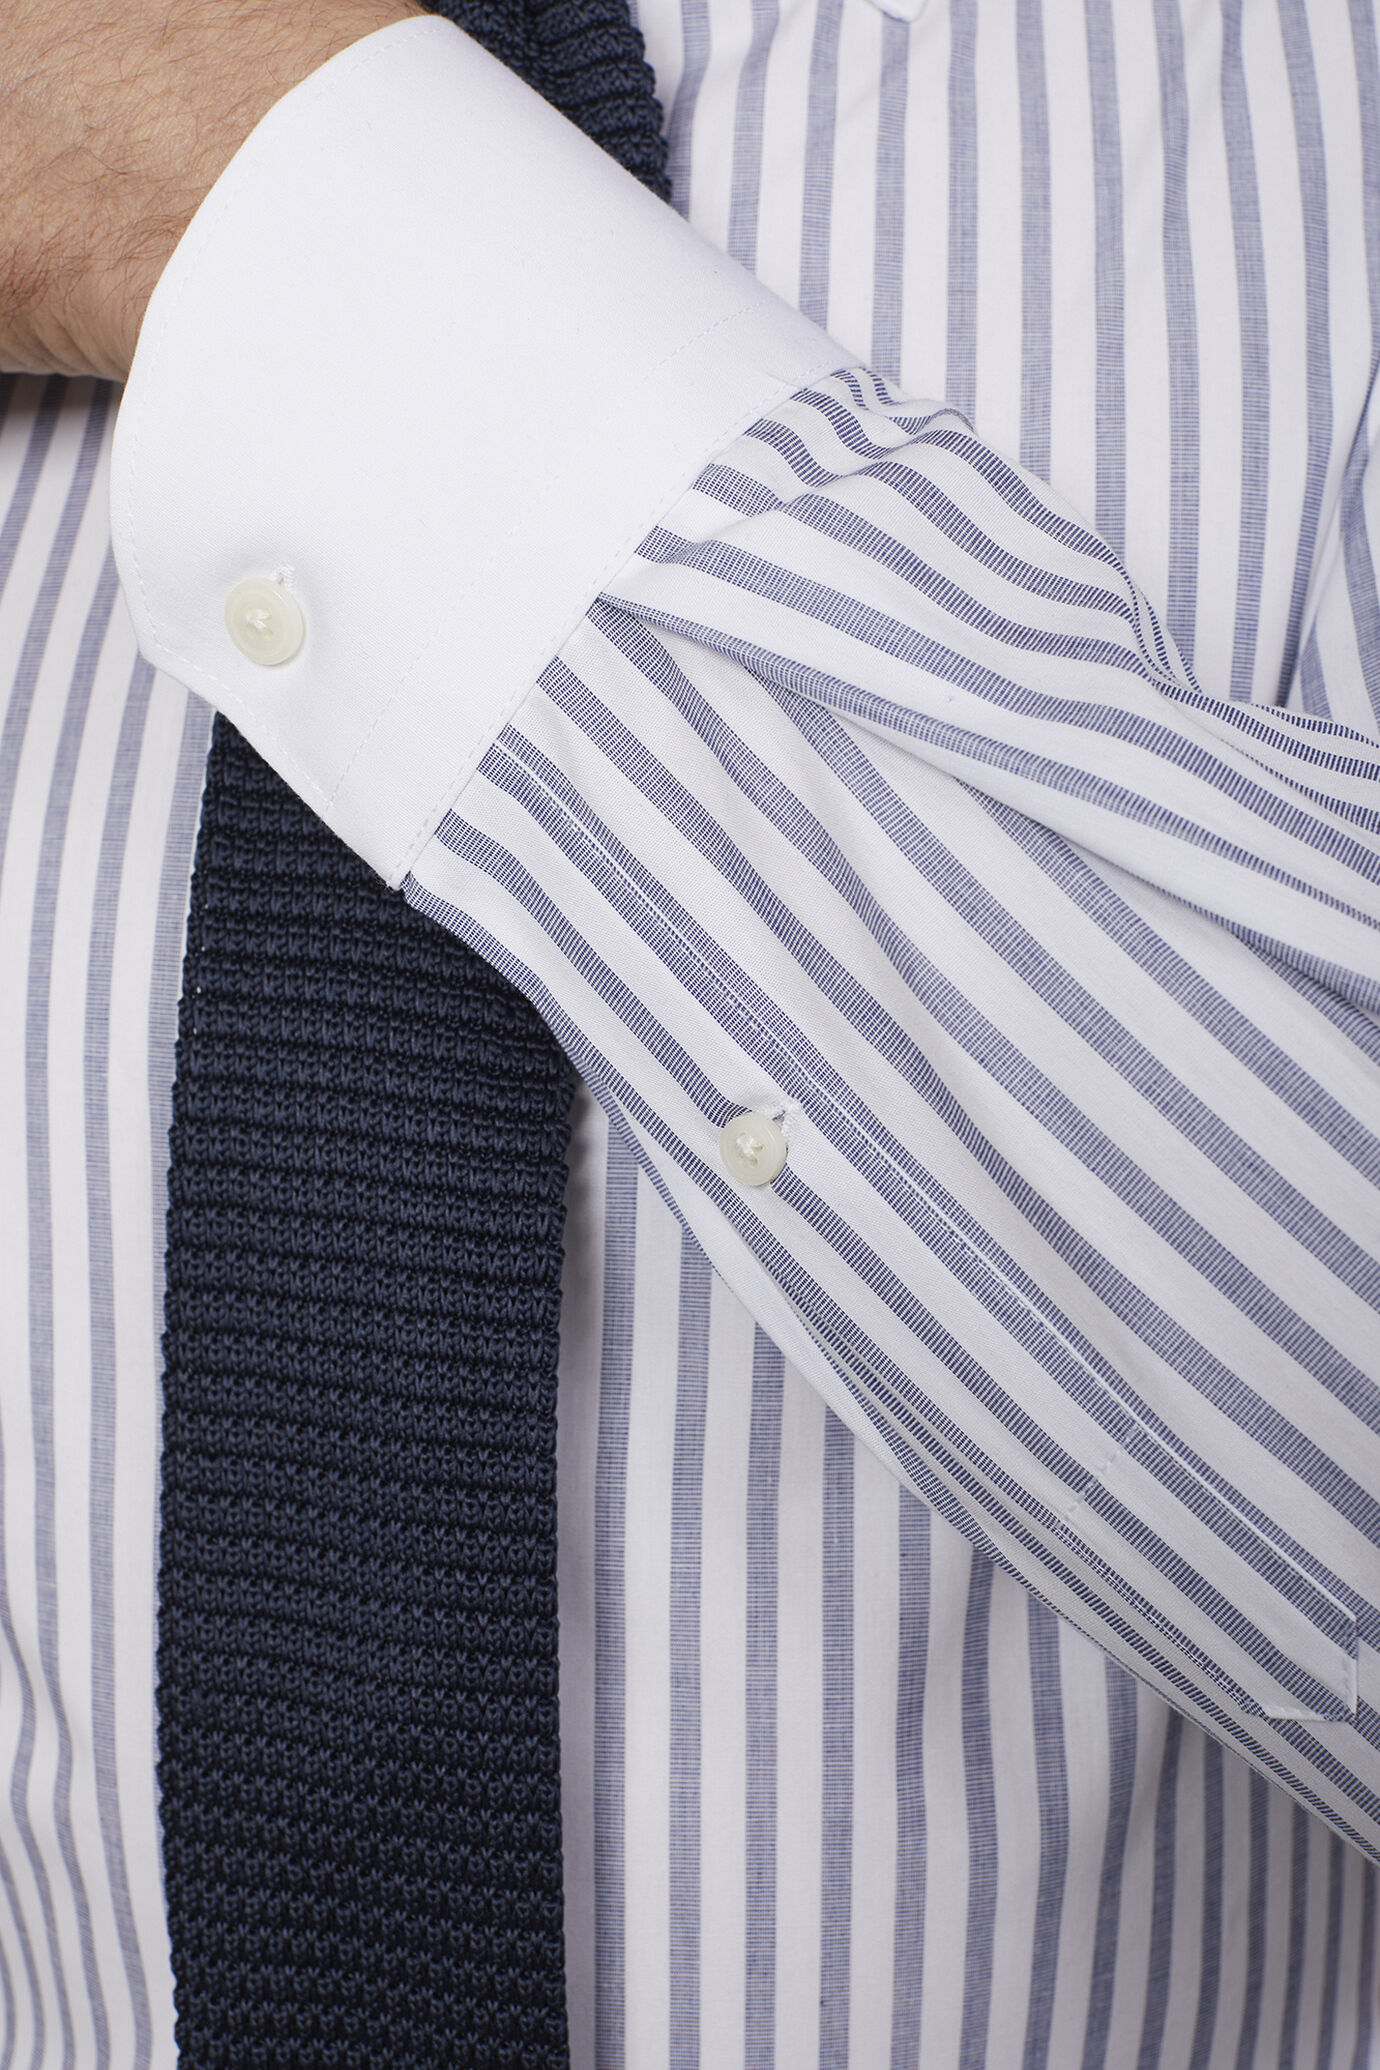 Camicia uomo collo classico 100% cotone tessuto tinto filo riga larga regular fit image number 3